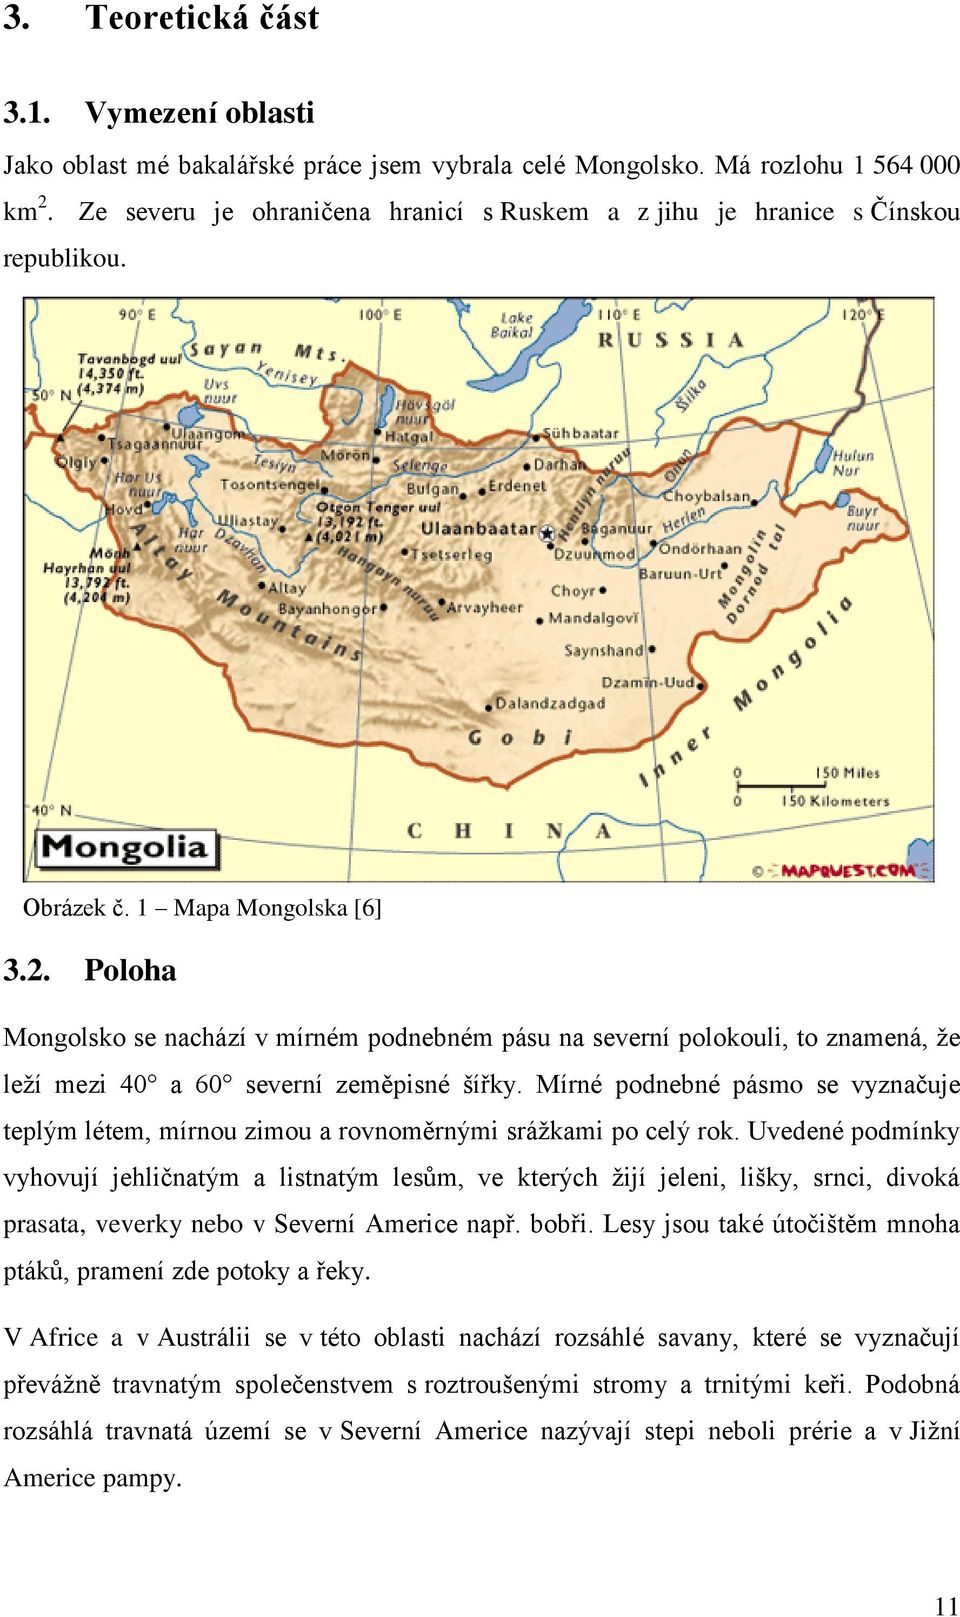 VYSOKÁ ŠKOLA POLYTECHNICKÁ JIHLAVA. Možnosti a meze dalšího rozvoje  cestovního ruchu Mongolsko - PDF Stažení zdarma